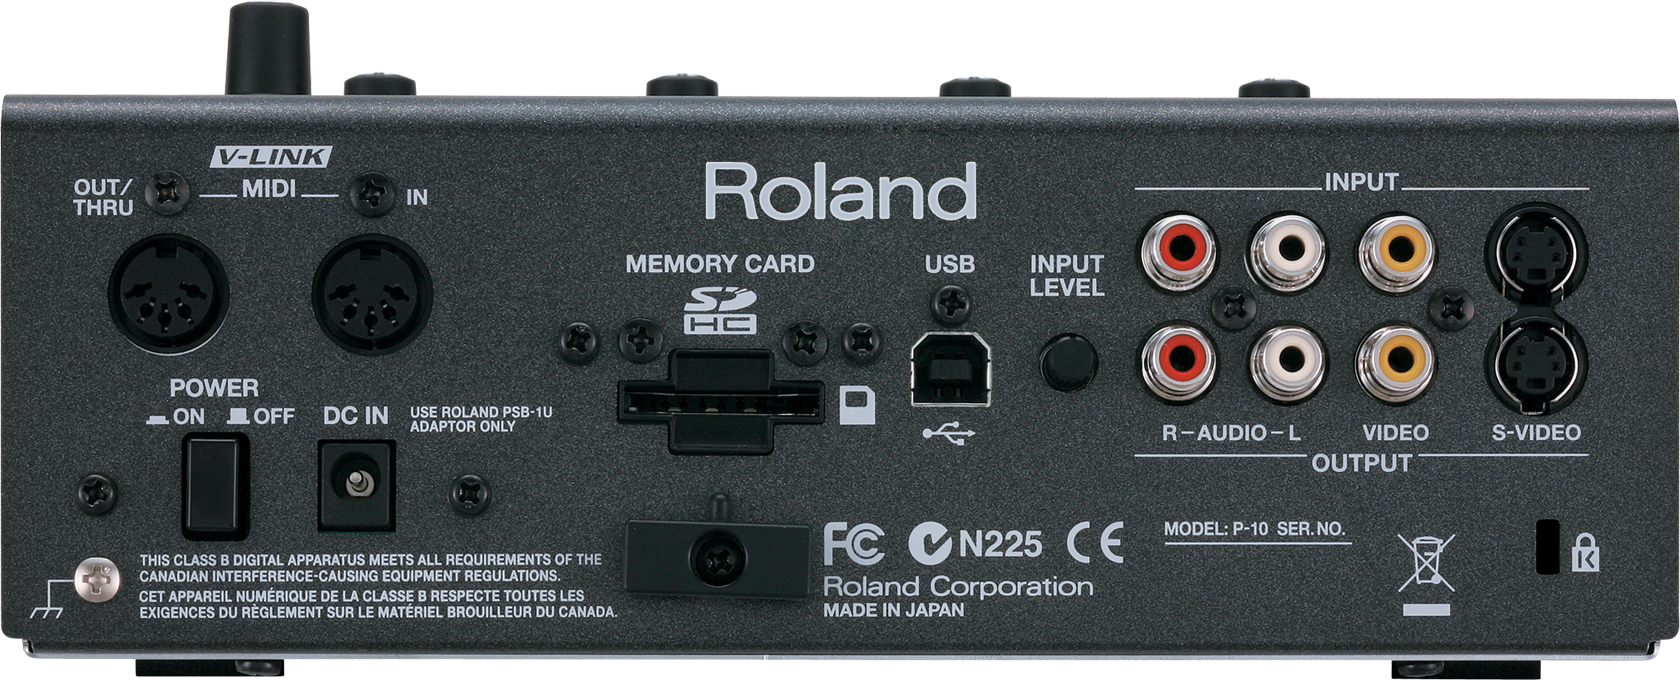 Roland Pro A/V - P-10 | Visual Sampler